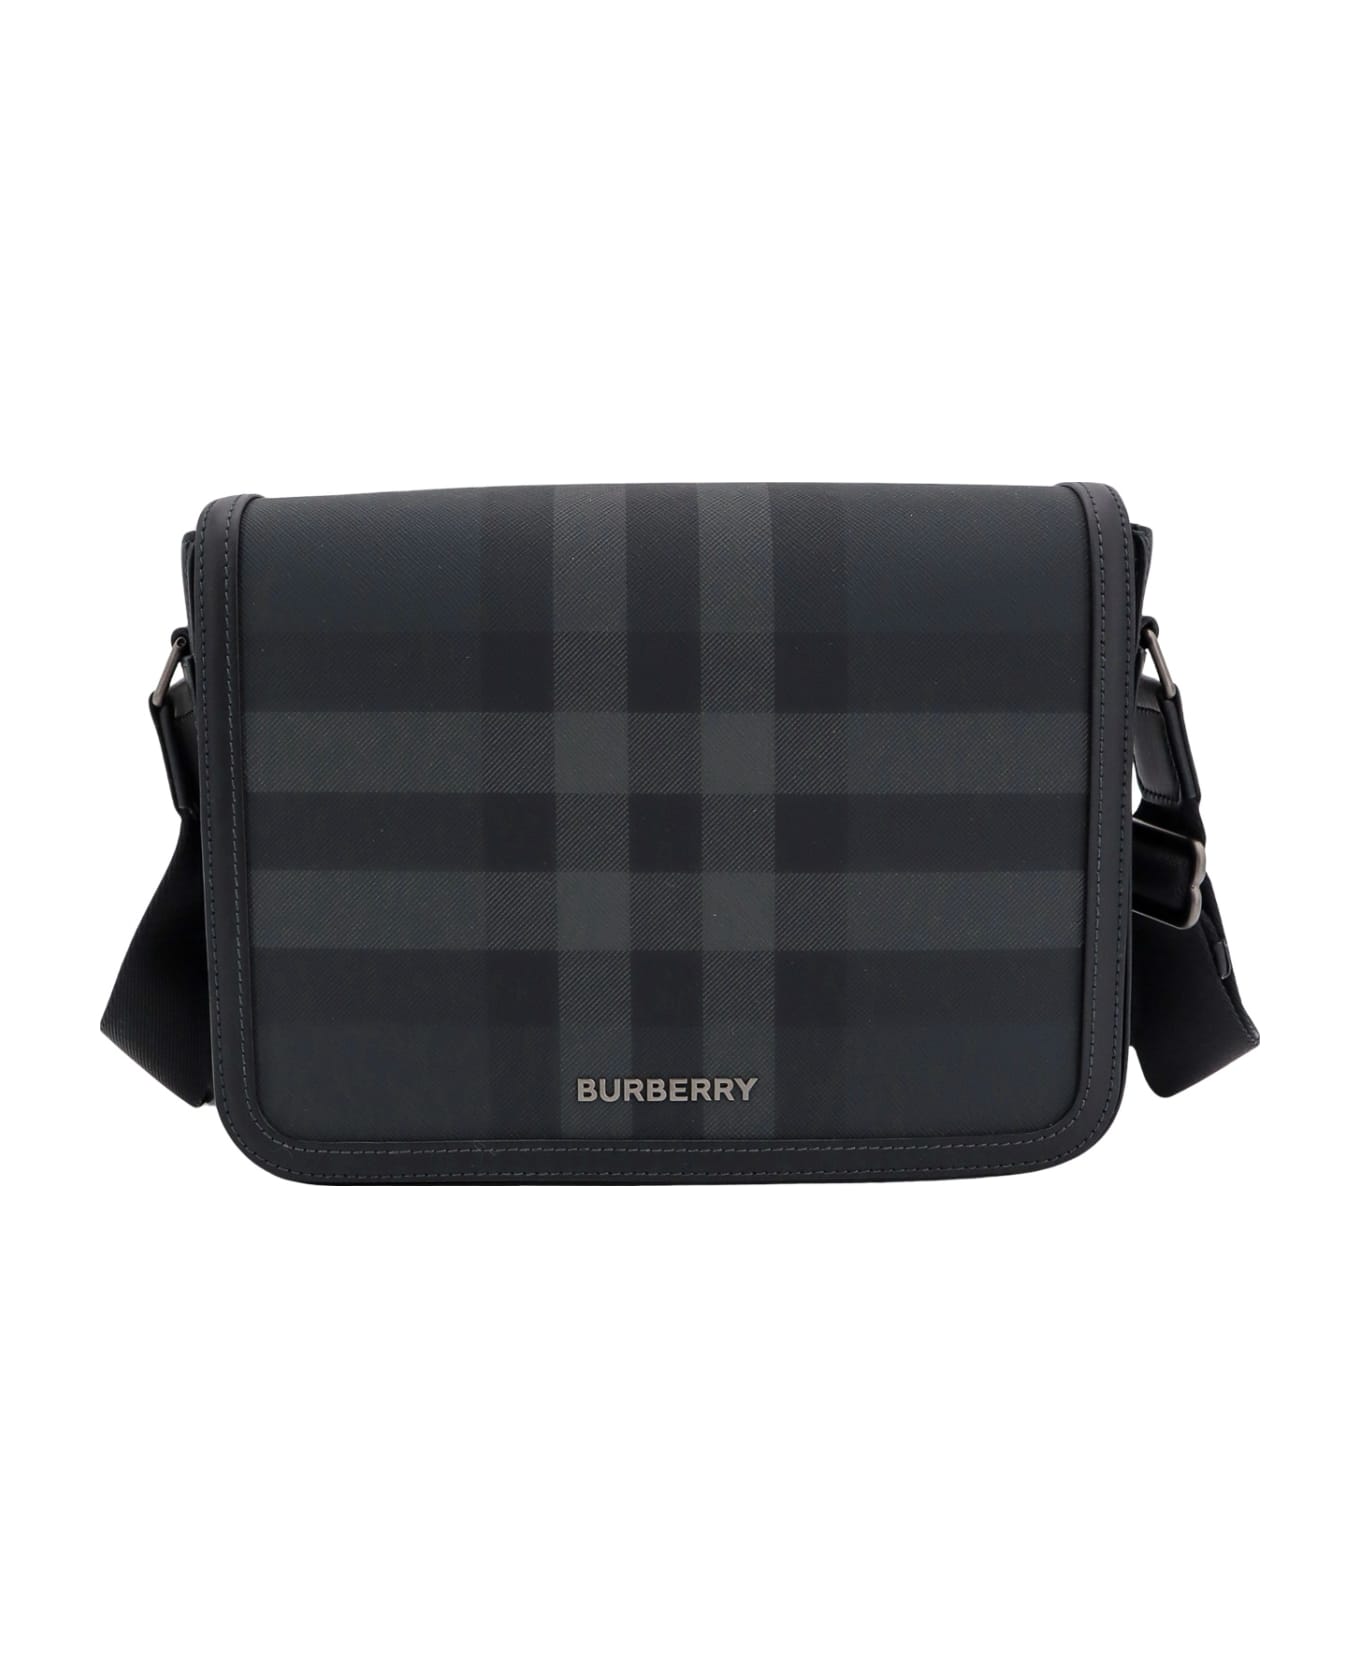 Burberry Shoulder Bag - NAVY